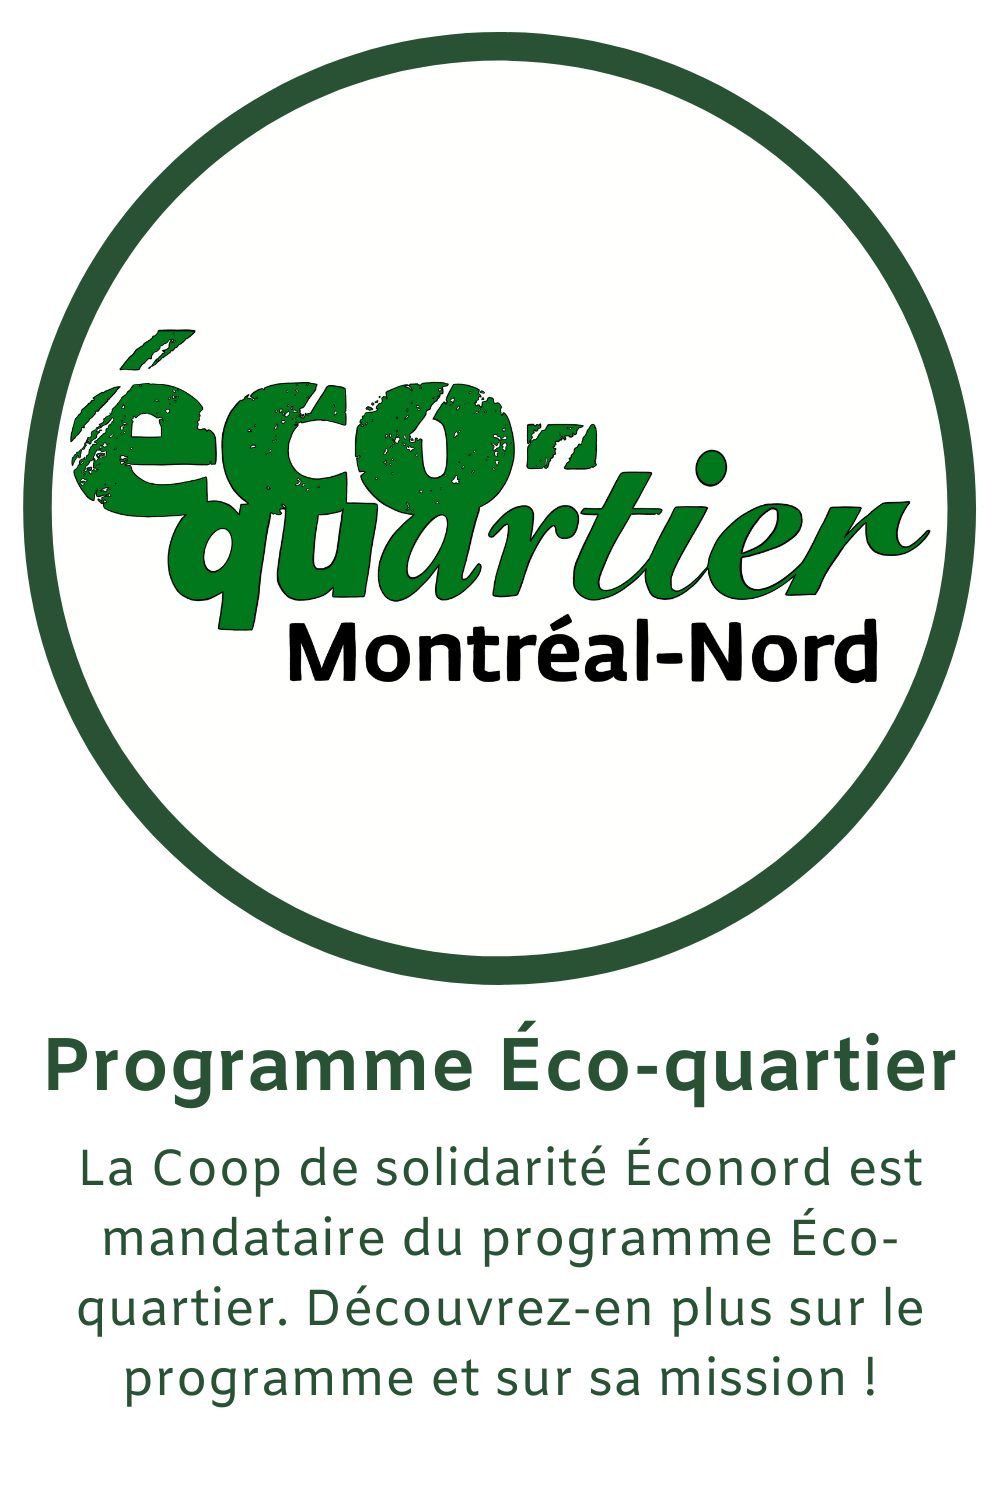 La Coop de solidarité Éconord est mandataire du programme Éco-quartier. Découvrez-en plus sur le programme et sur sa mission!